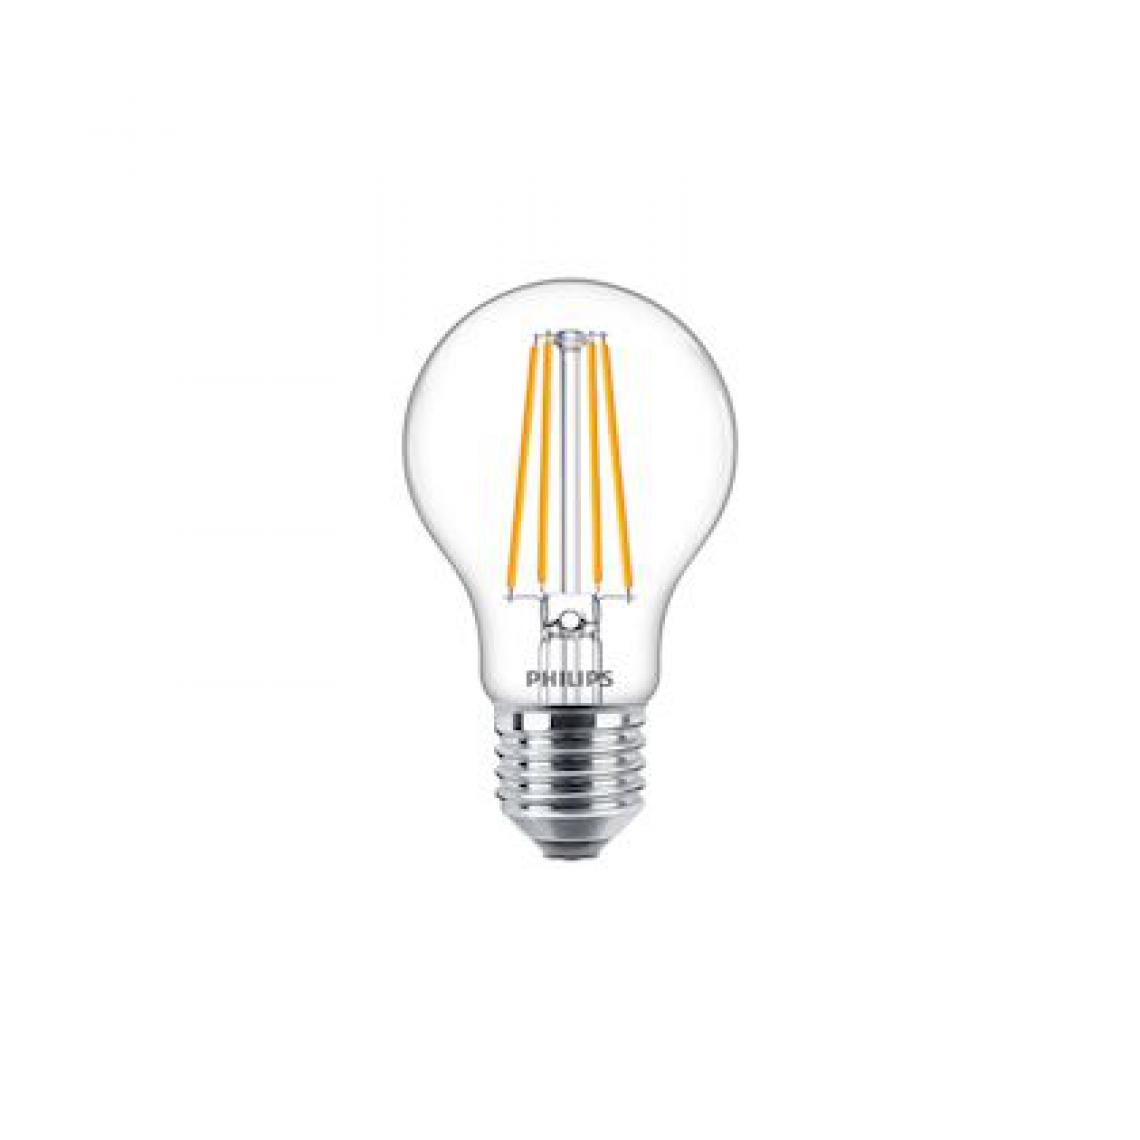 Philips - ampoule à led - philips classic ledbulb filament - e27 - 8w - 2700k - claire - philips 649081 - Ampoules LED